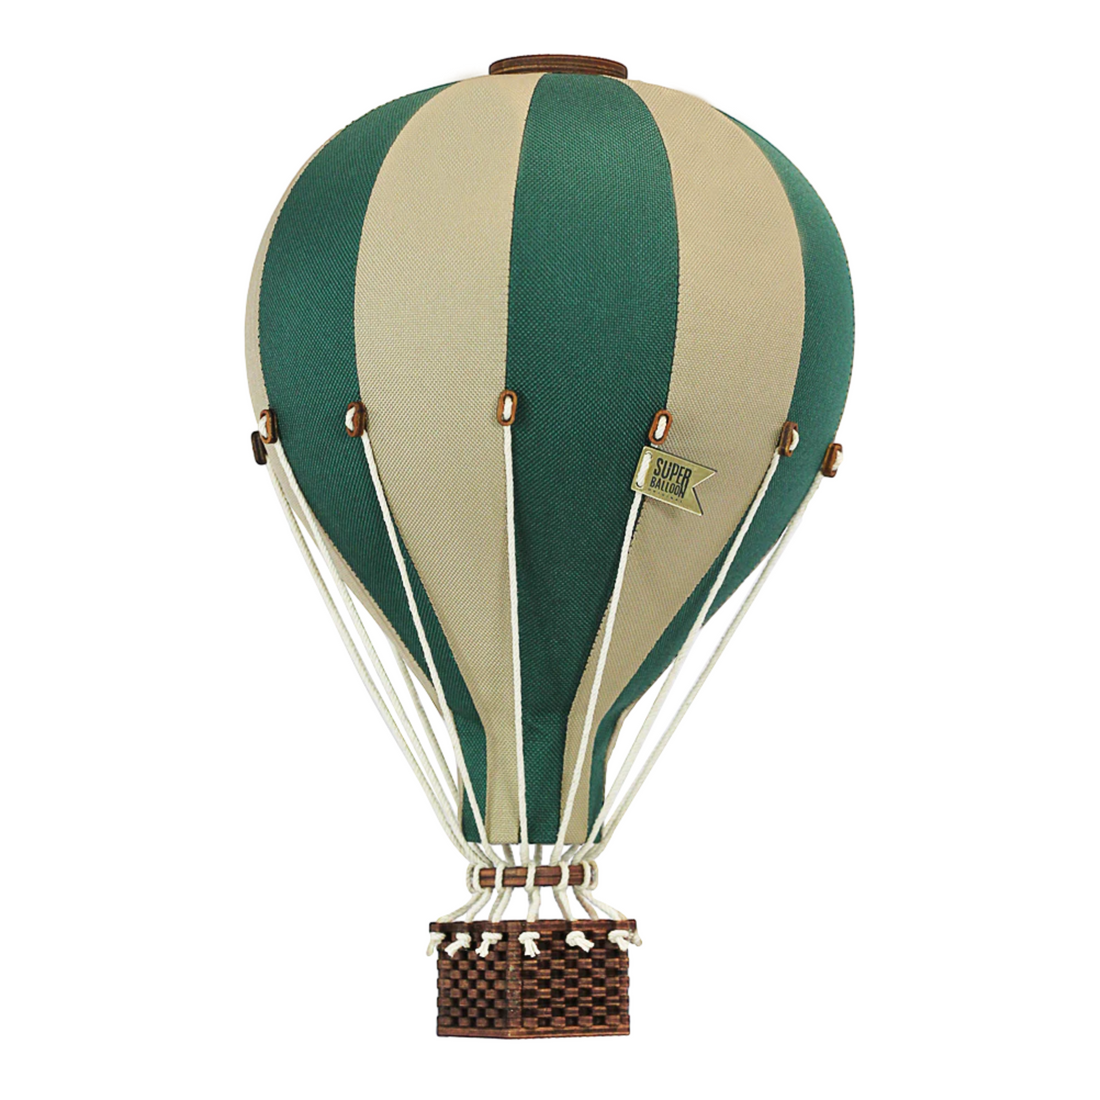 Super Balloon oro balionas - Pastel green | Beige